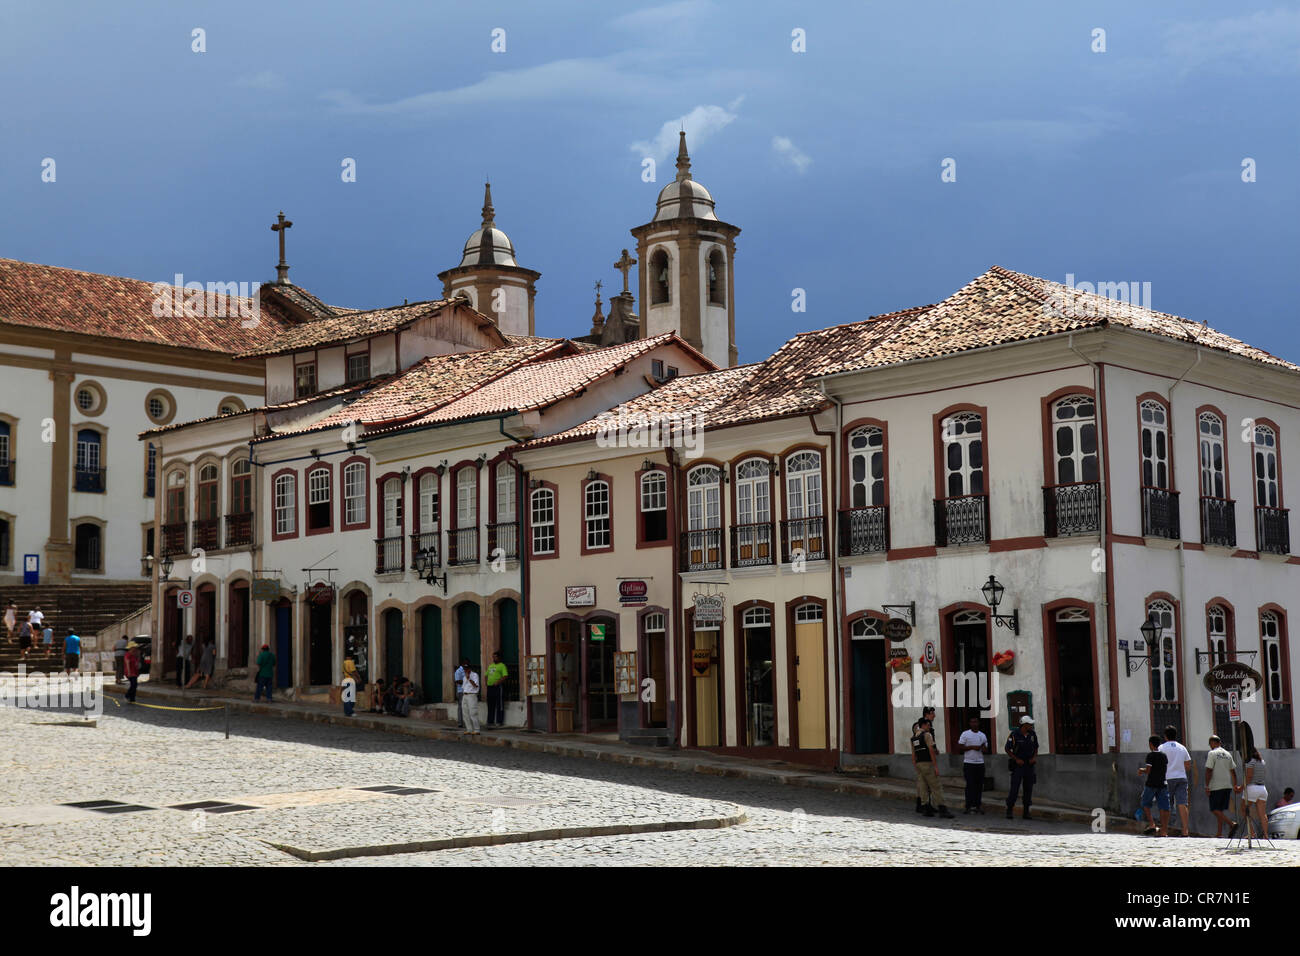 Brasil, Minas Gerais state, Ouro Preto, house facade Stock Photo